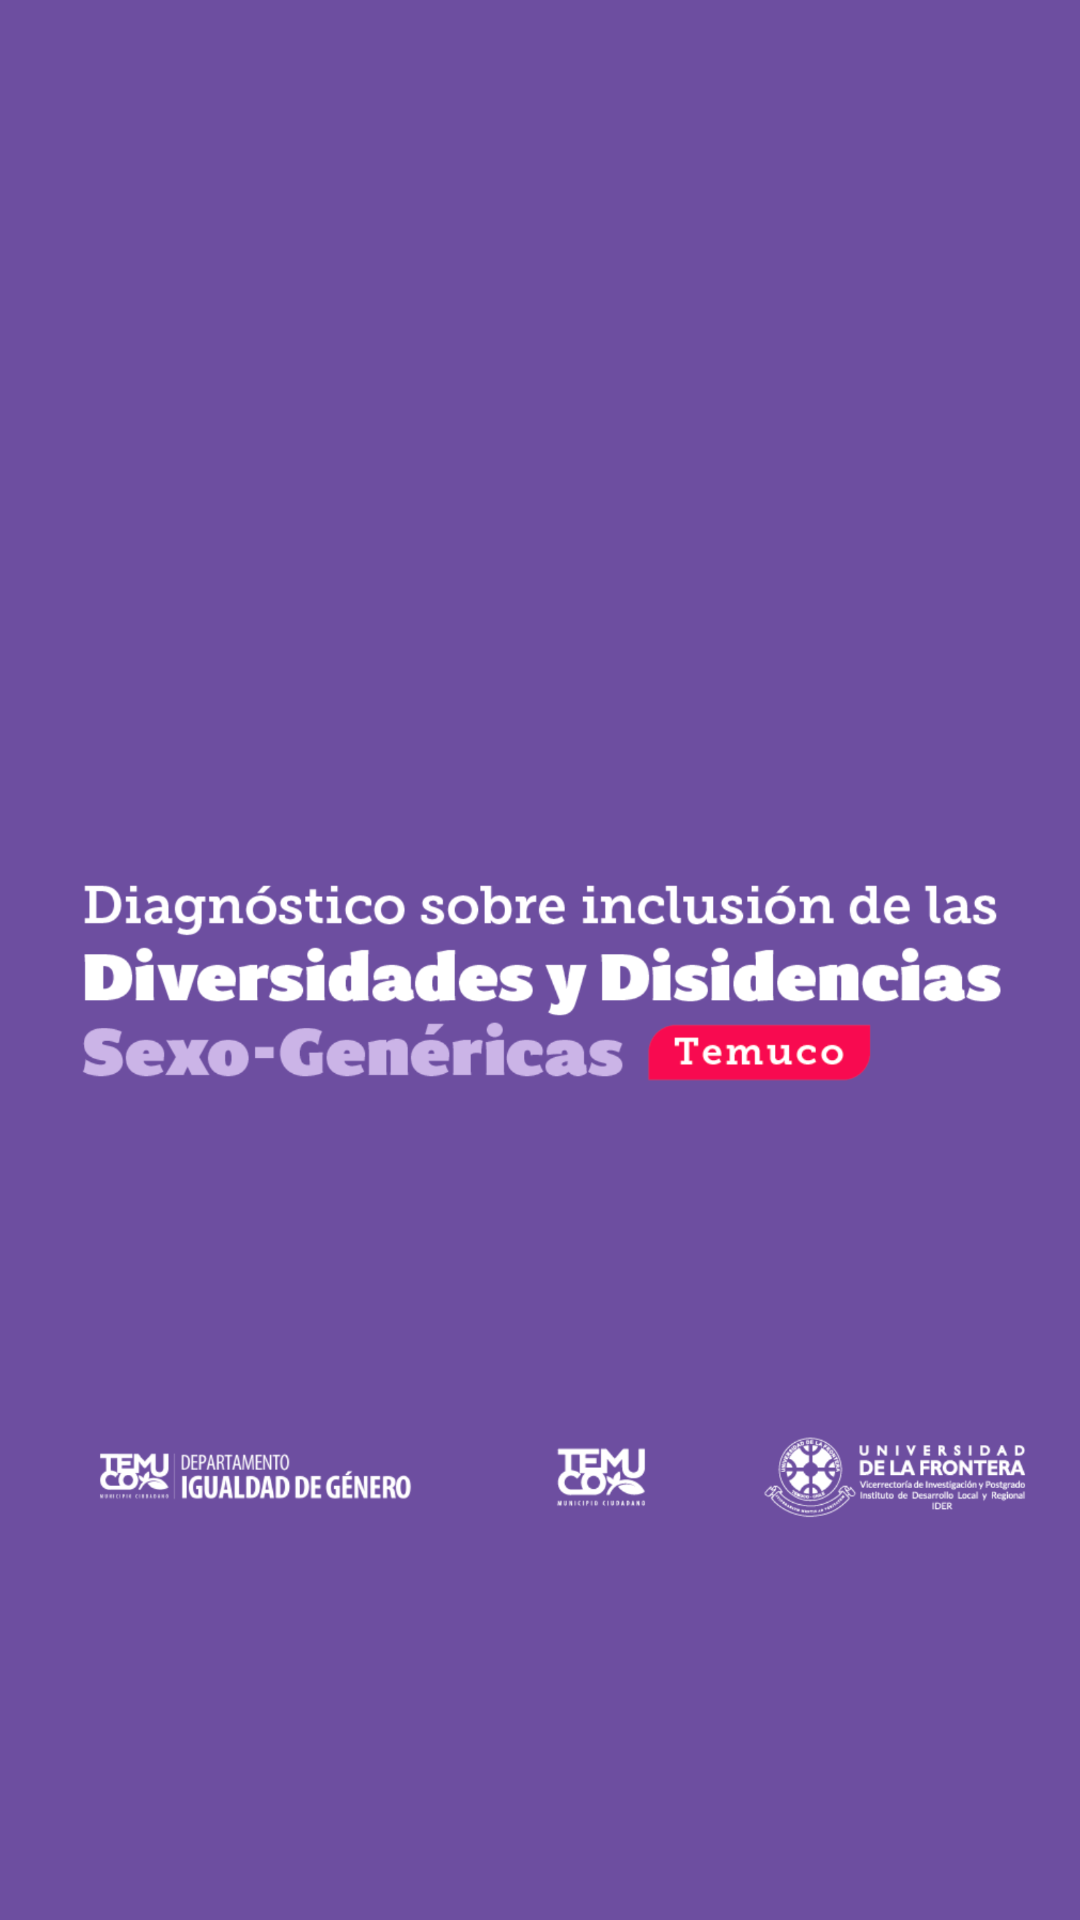 Diagnóstico Diversidades y Disidencias Sexo-Genéticas Temuco